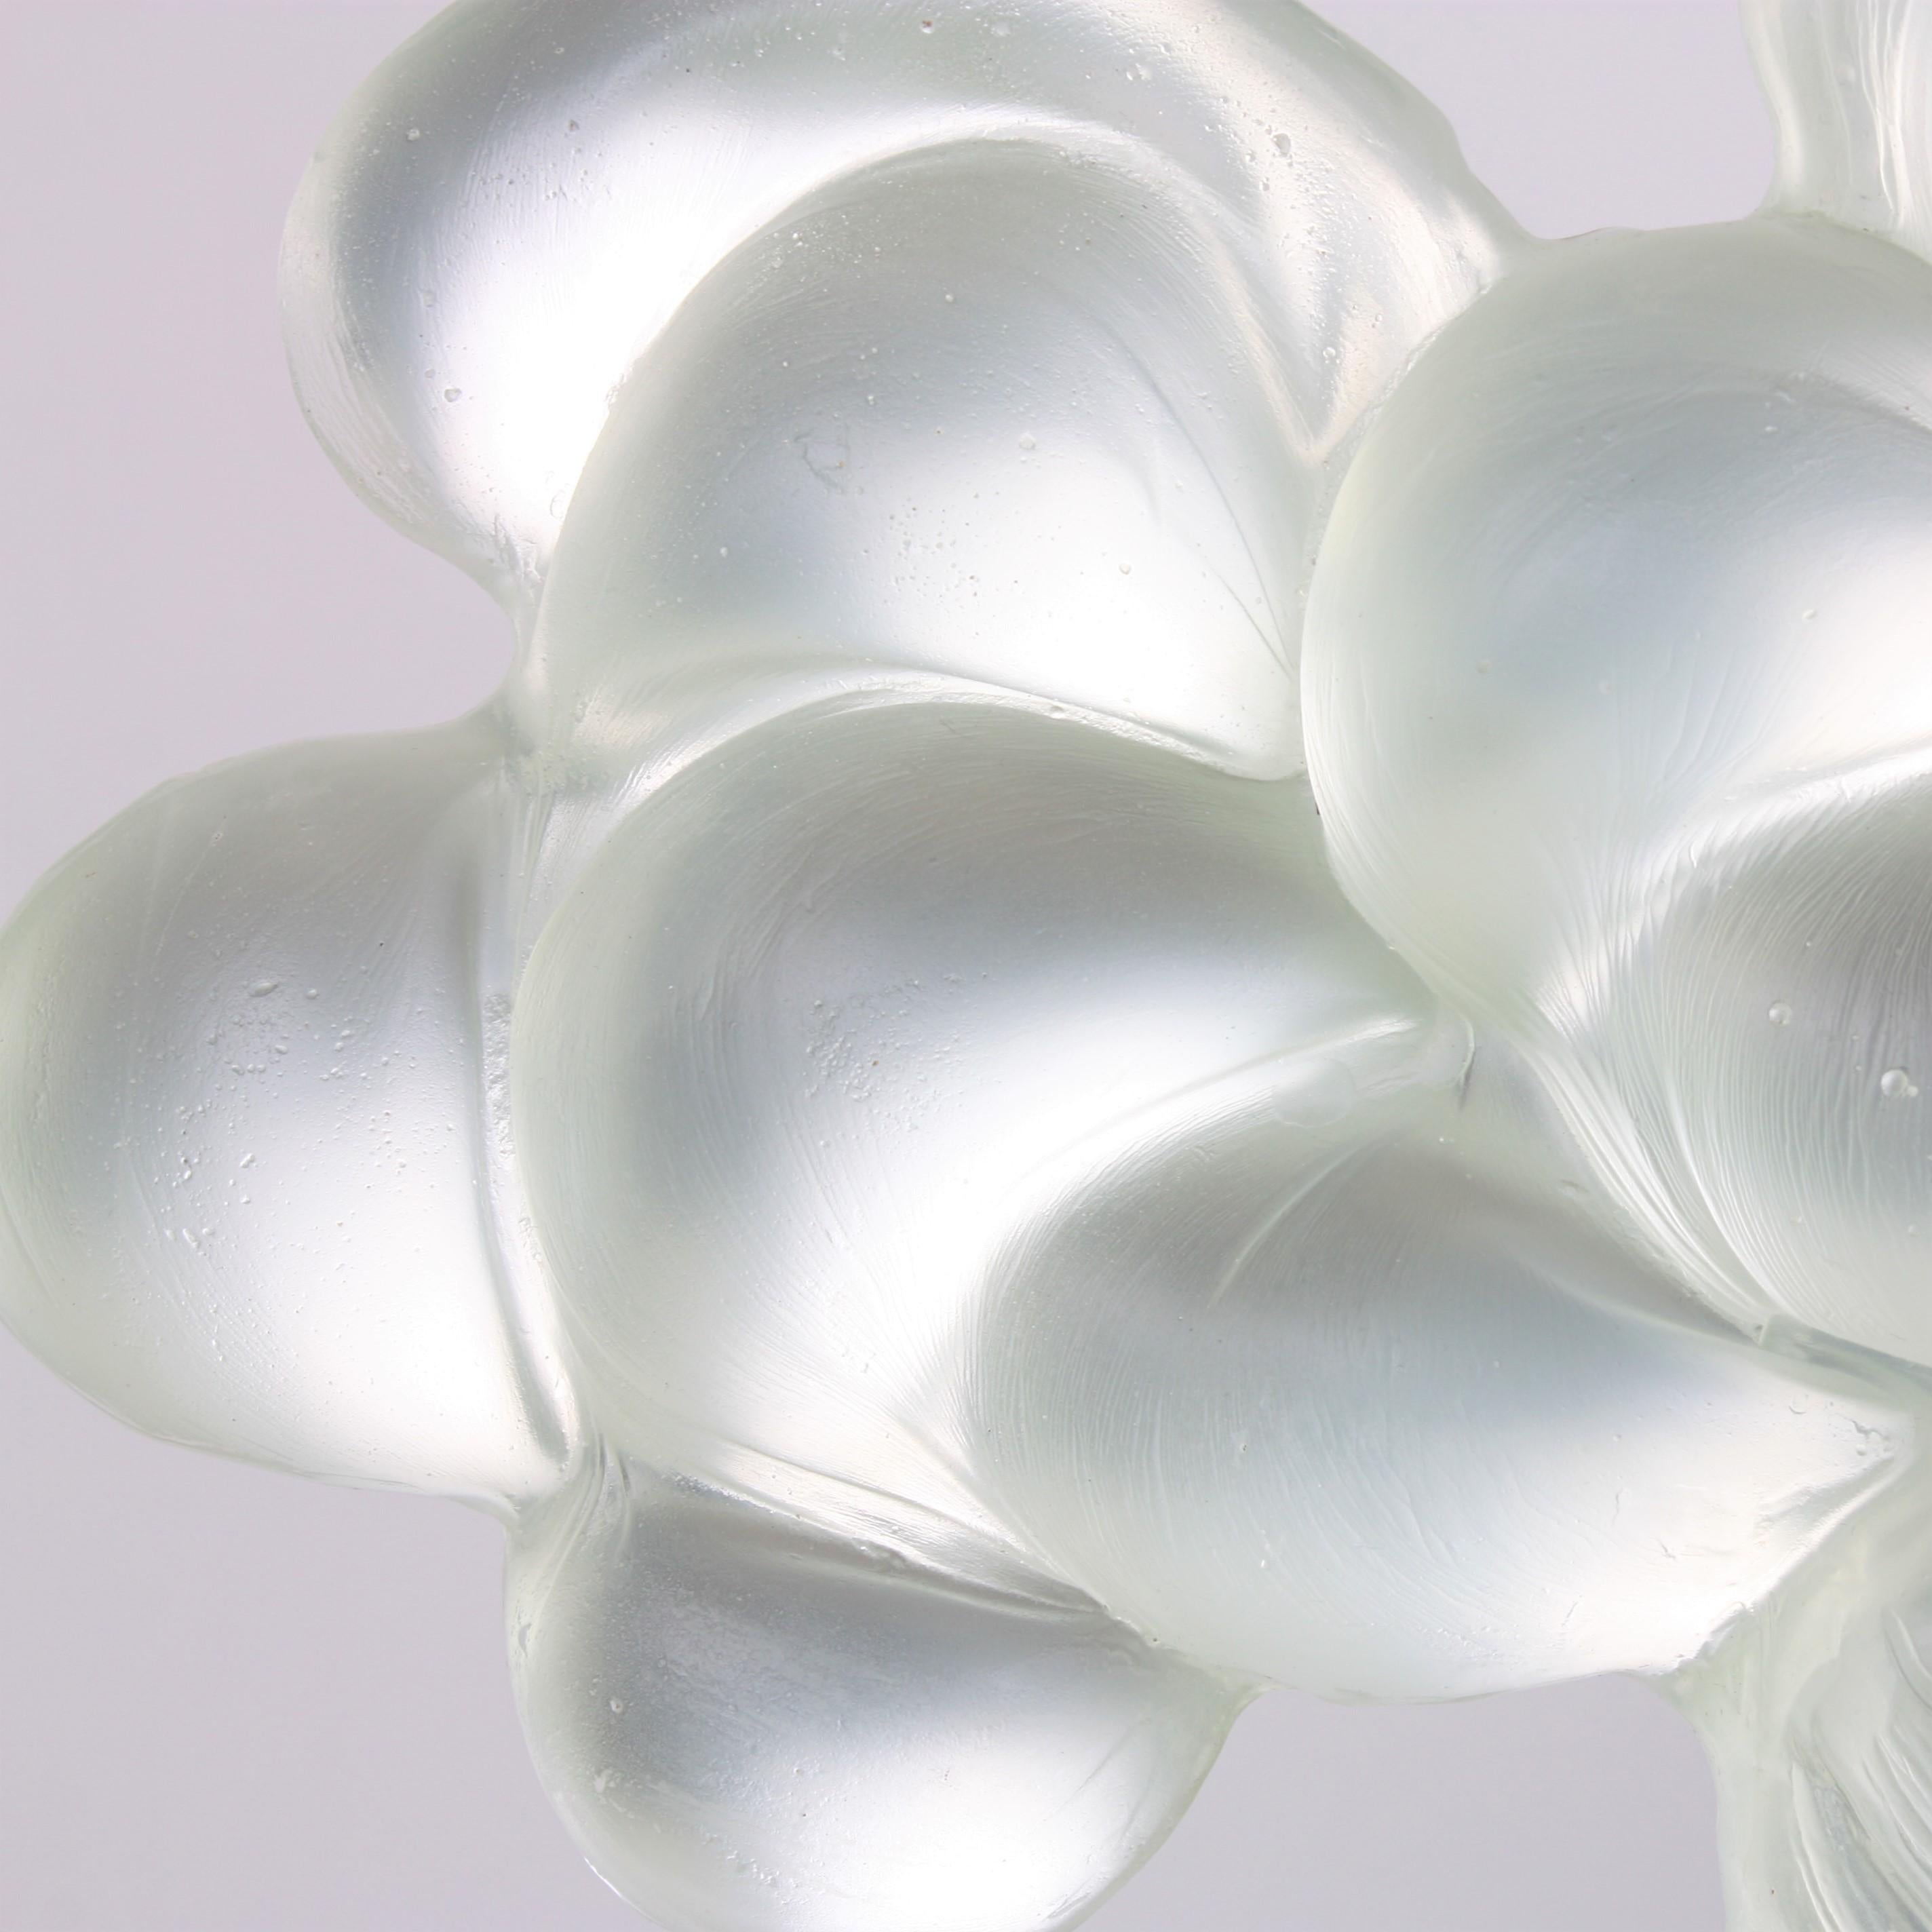 Minimalist Contemporary Glass Cloud Sculpture, Nuage III